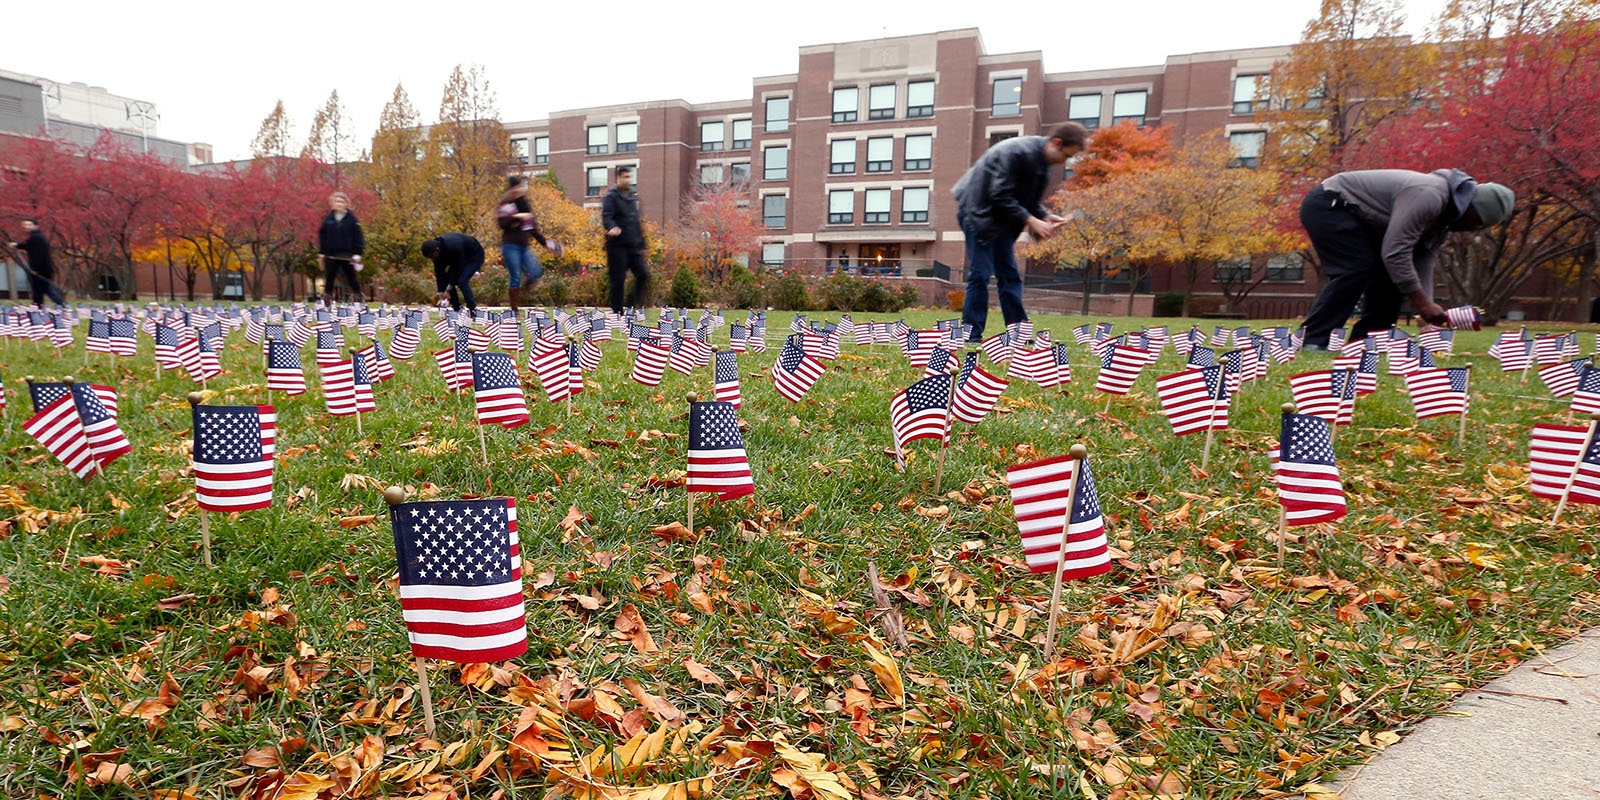 People line American flags on lawn of DePaul campus